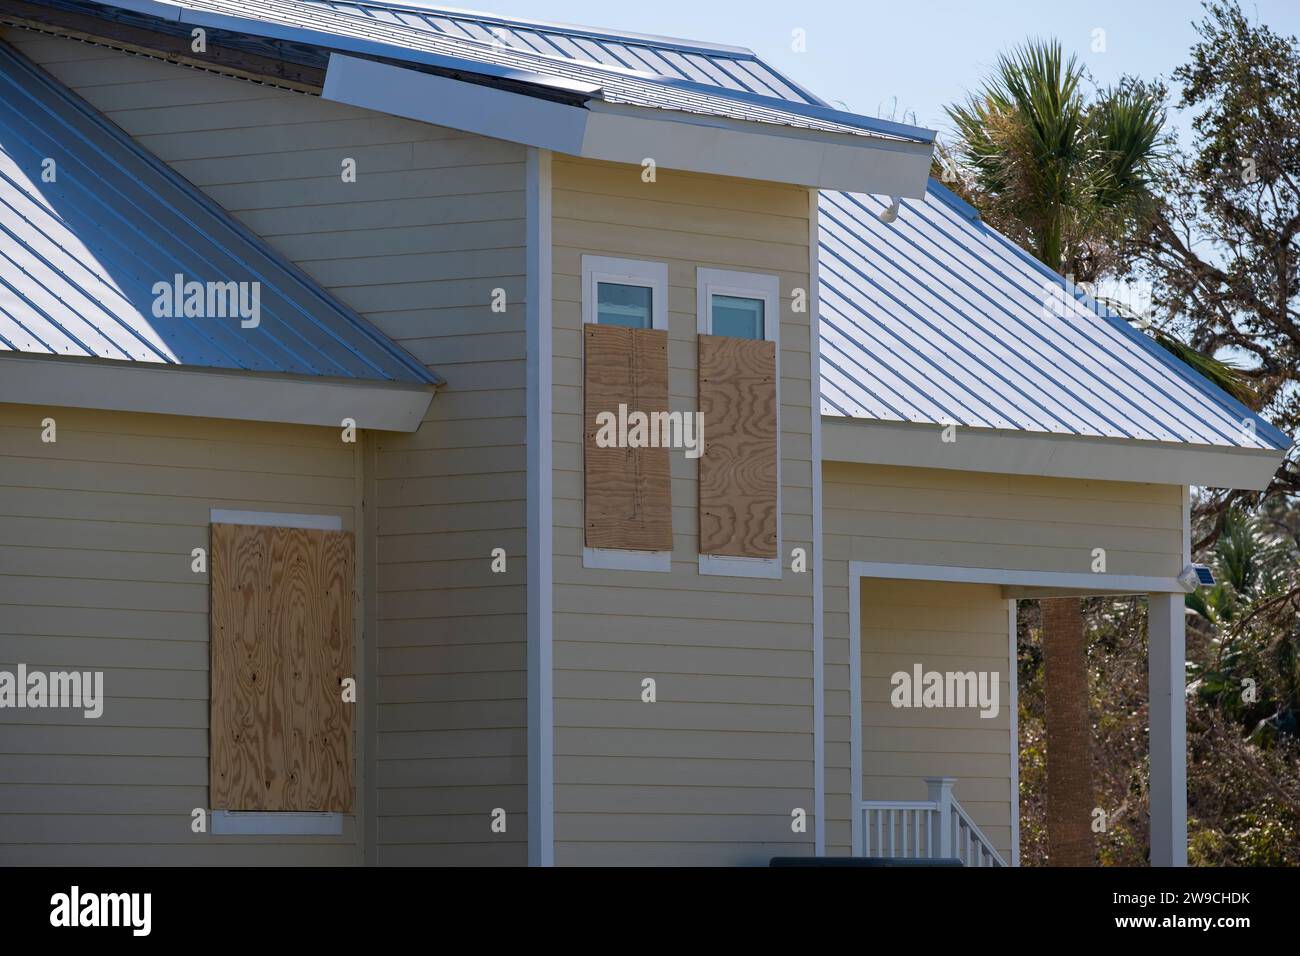 Sperrholz als Sturmjalousien zum Schutz von Hausfenstern. Schutzmassnahmen vor Naturkatastrophen in Florida. Stockfoto